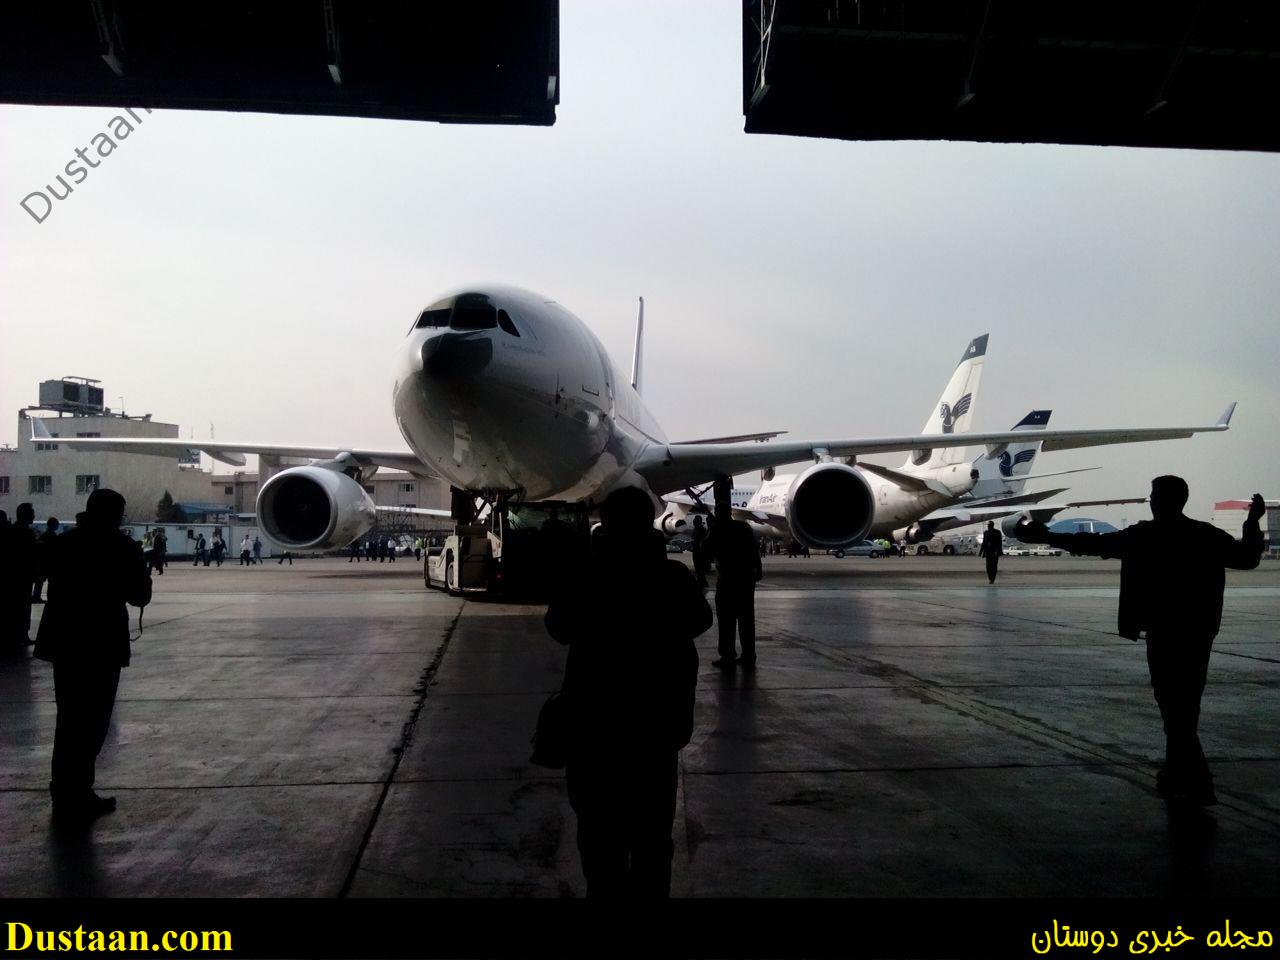 www.dustaan.com-dustaan.com-تصاویری از لحظه ورود هواپیمای جدید ایران&#160;به آشیانه